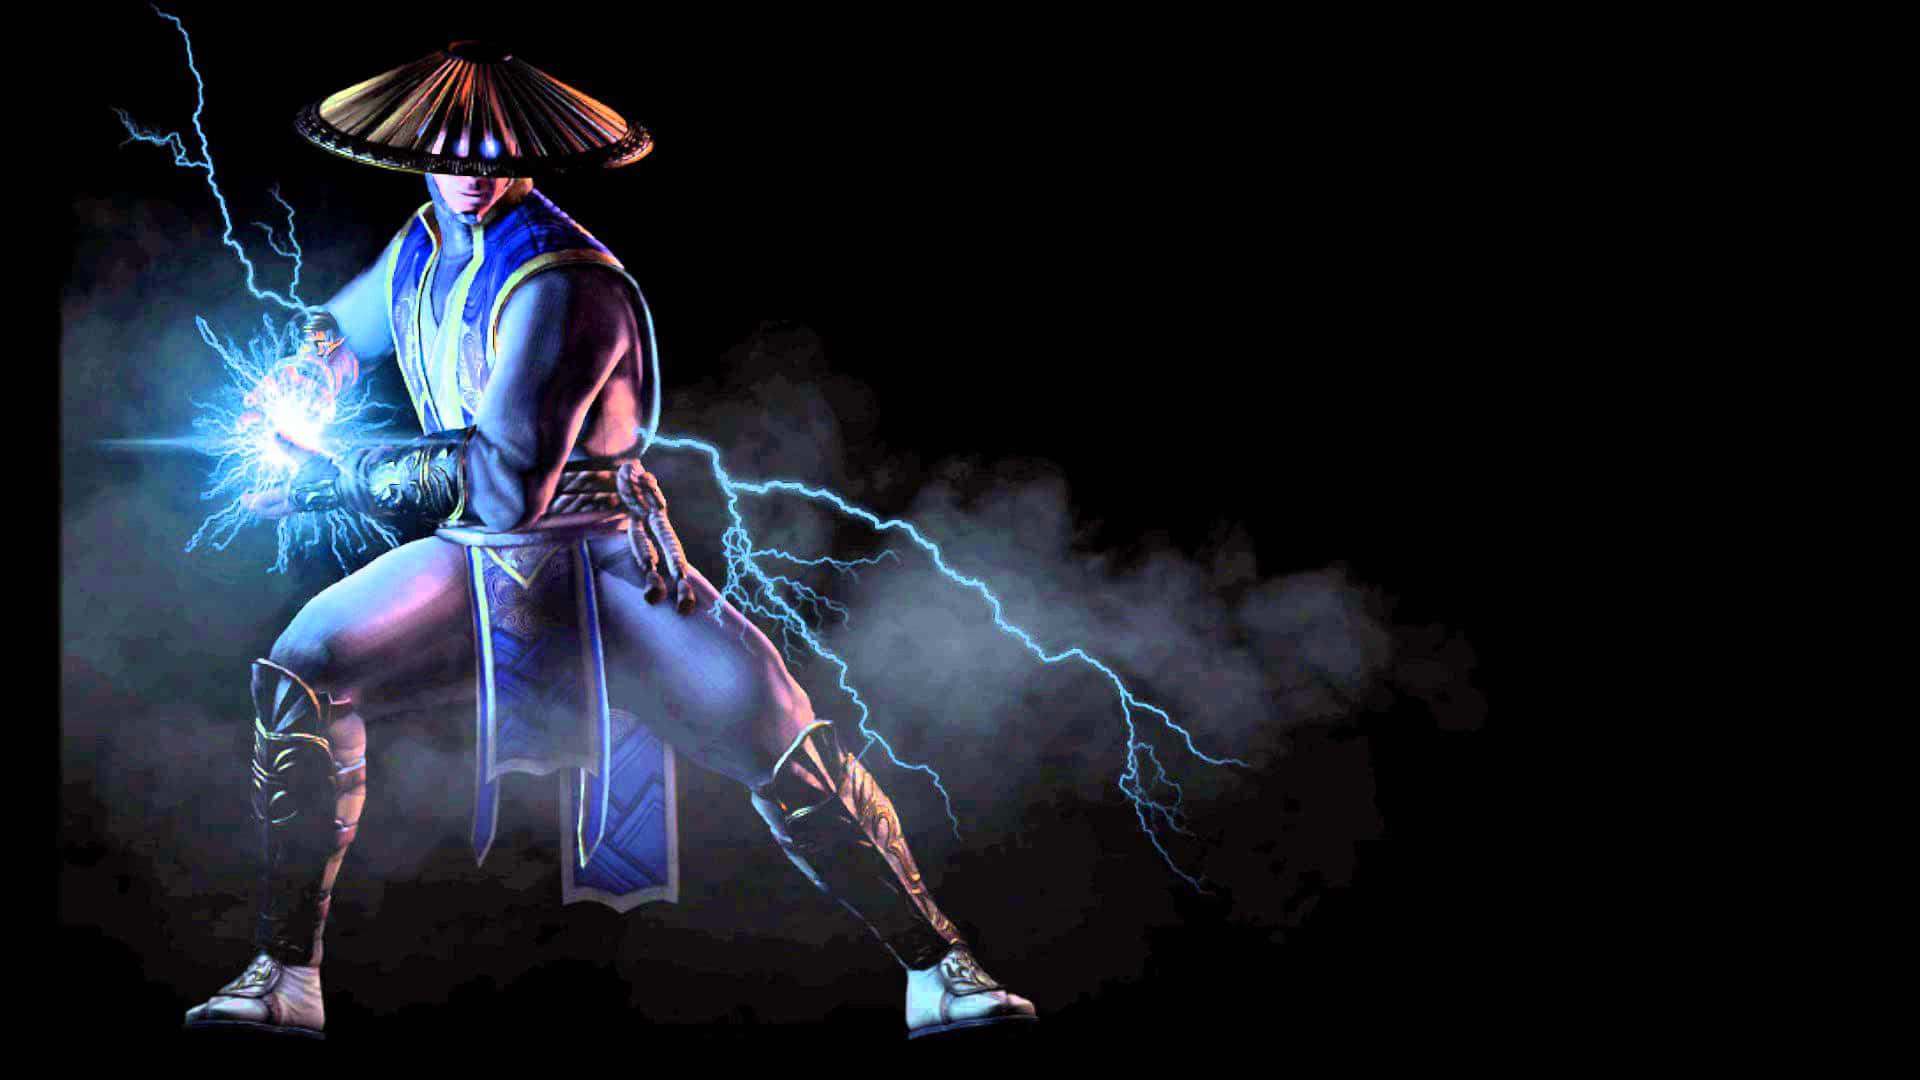 Raiden, the God of Thunder, striking in Mortal Kombat Wallpaper